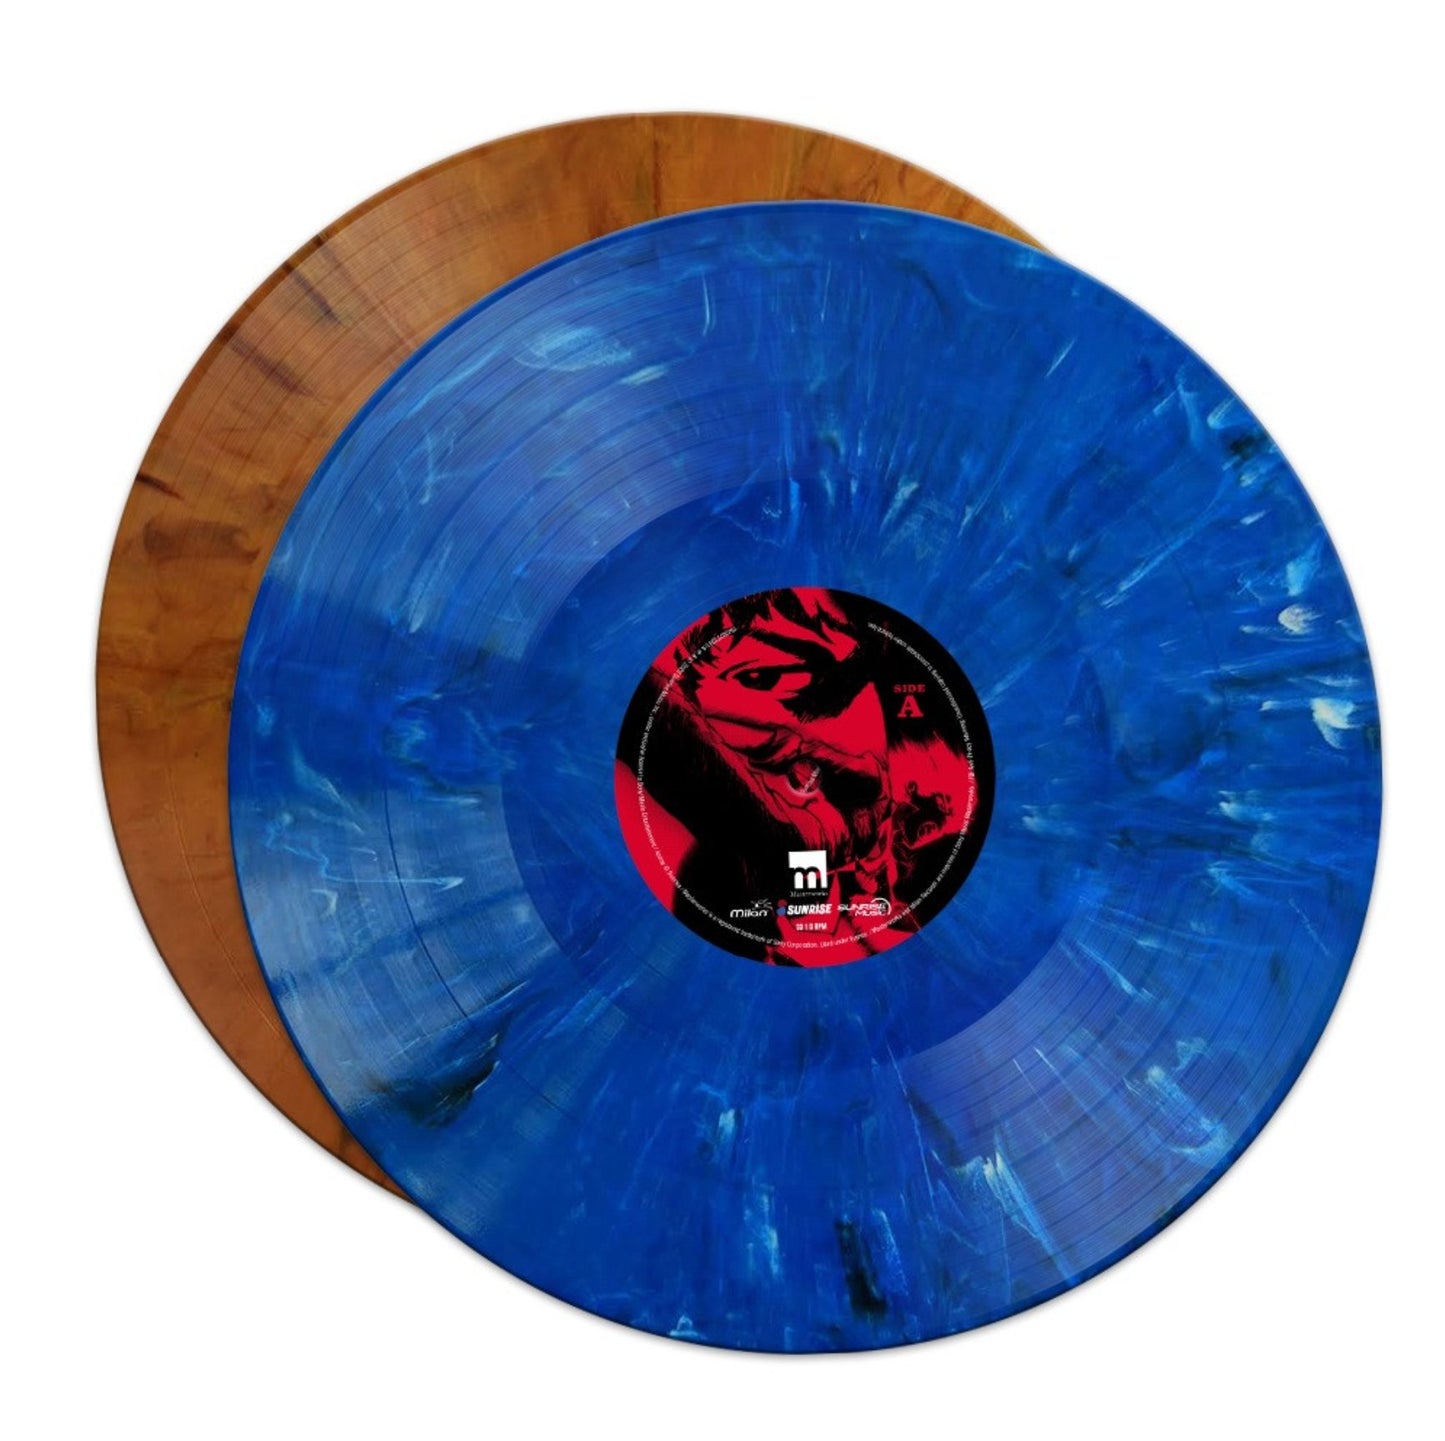 Cowboy Bebop Vinyl Record - Orange and Blue